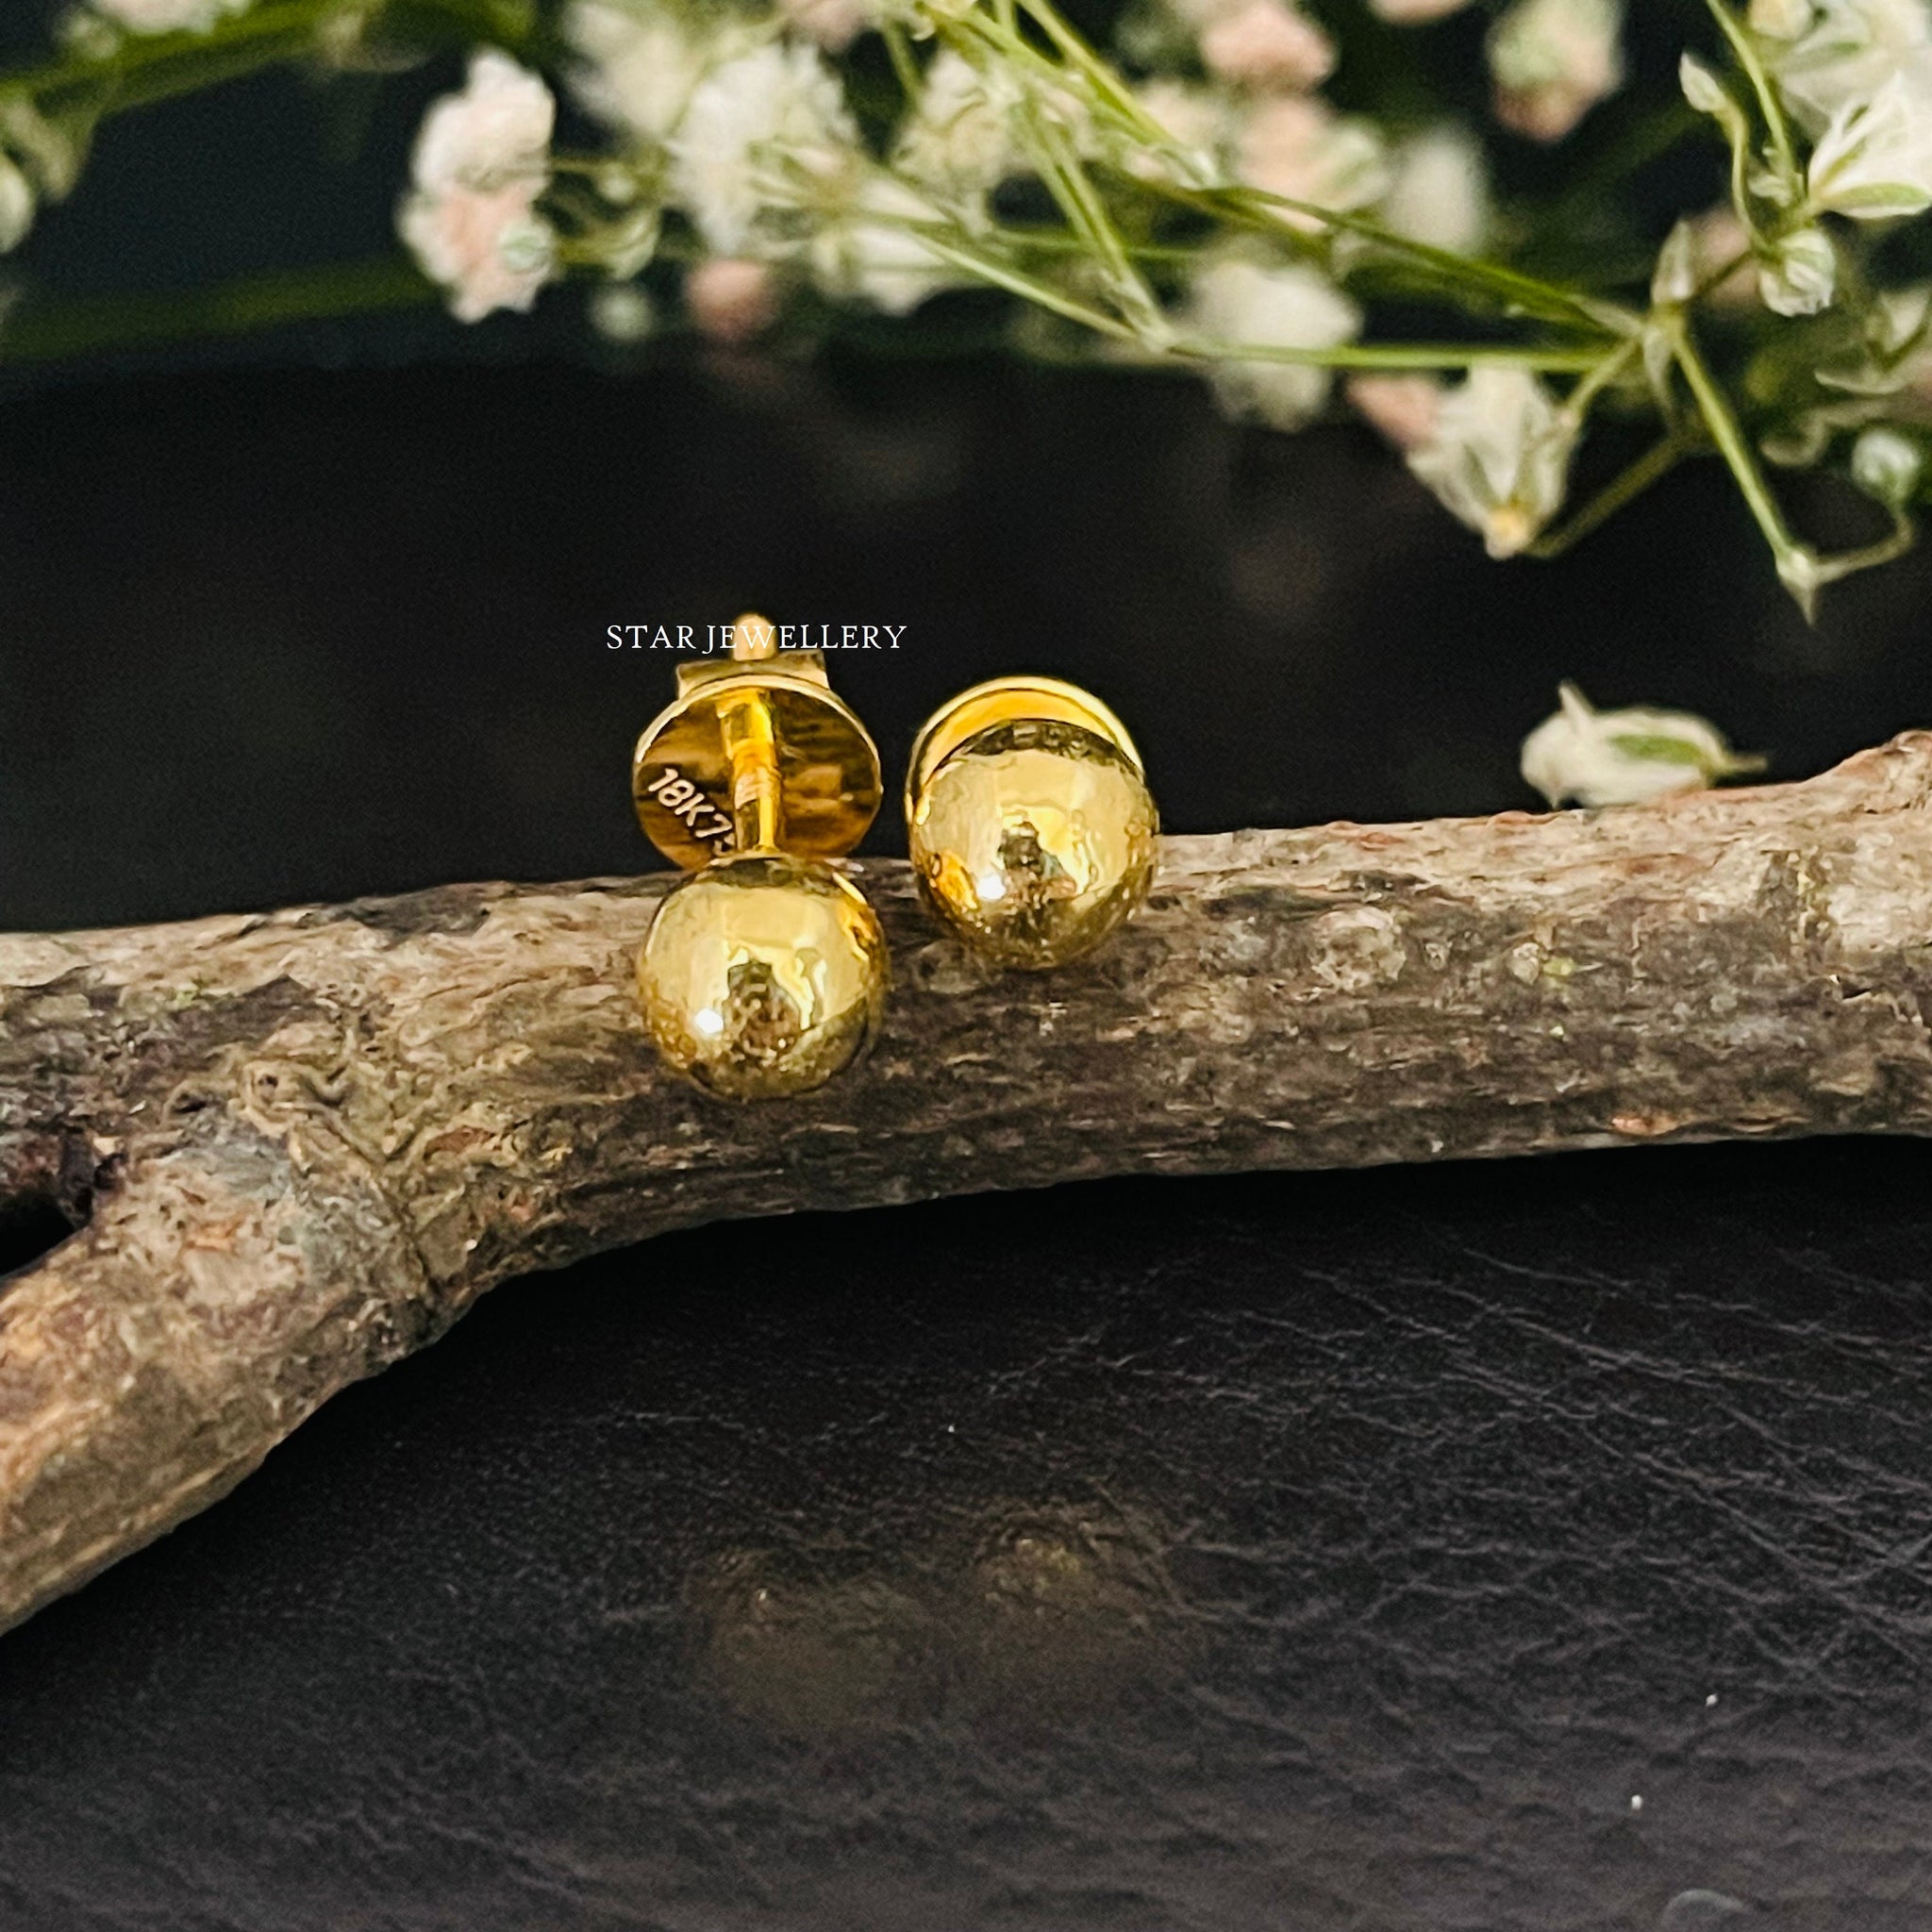 Boucle d'oreille perle en or massif 14K, boucle d'oreille sphère en or massif, boucle d'oreille perle or 5 MM, clous dorés, boucle d'oreille perle or minimaliste,